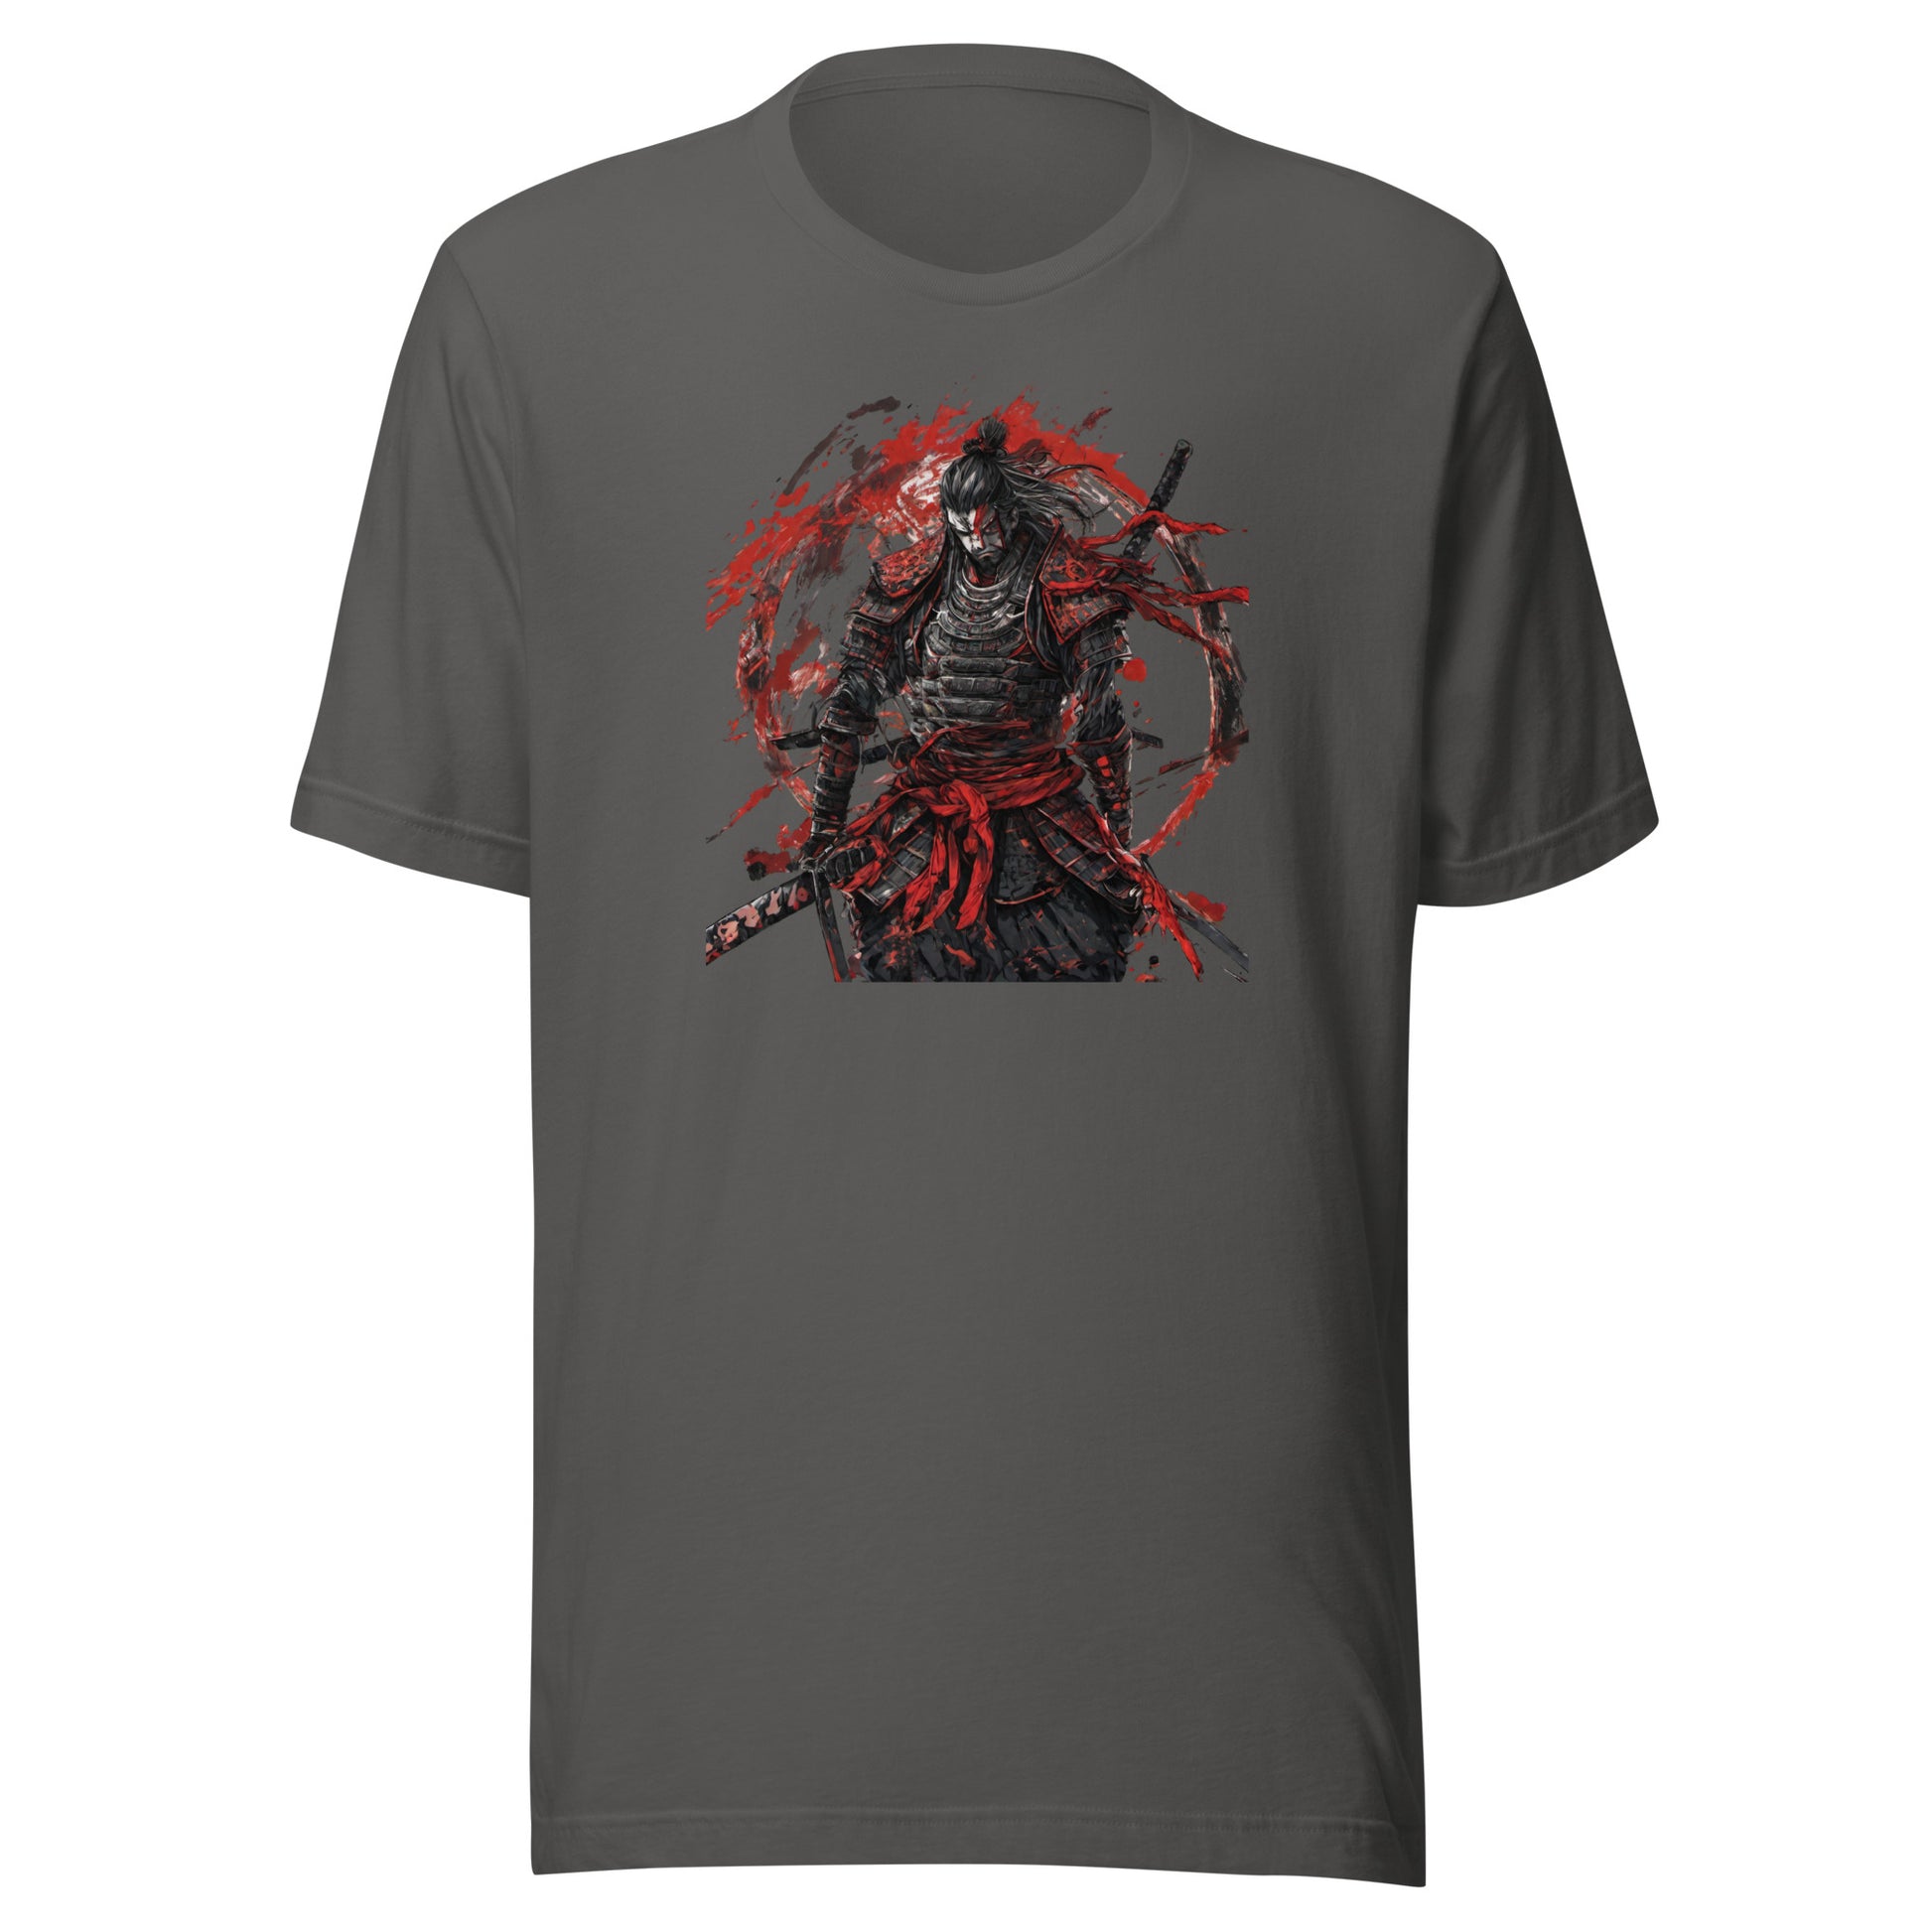 Art of War Graphic Men's T-Shirt Asphalt